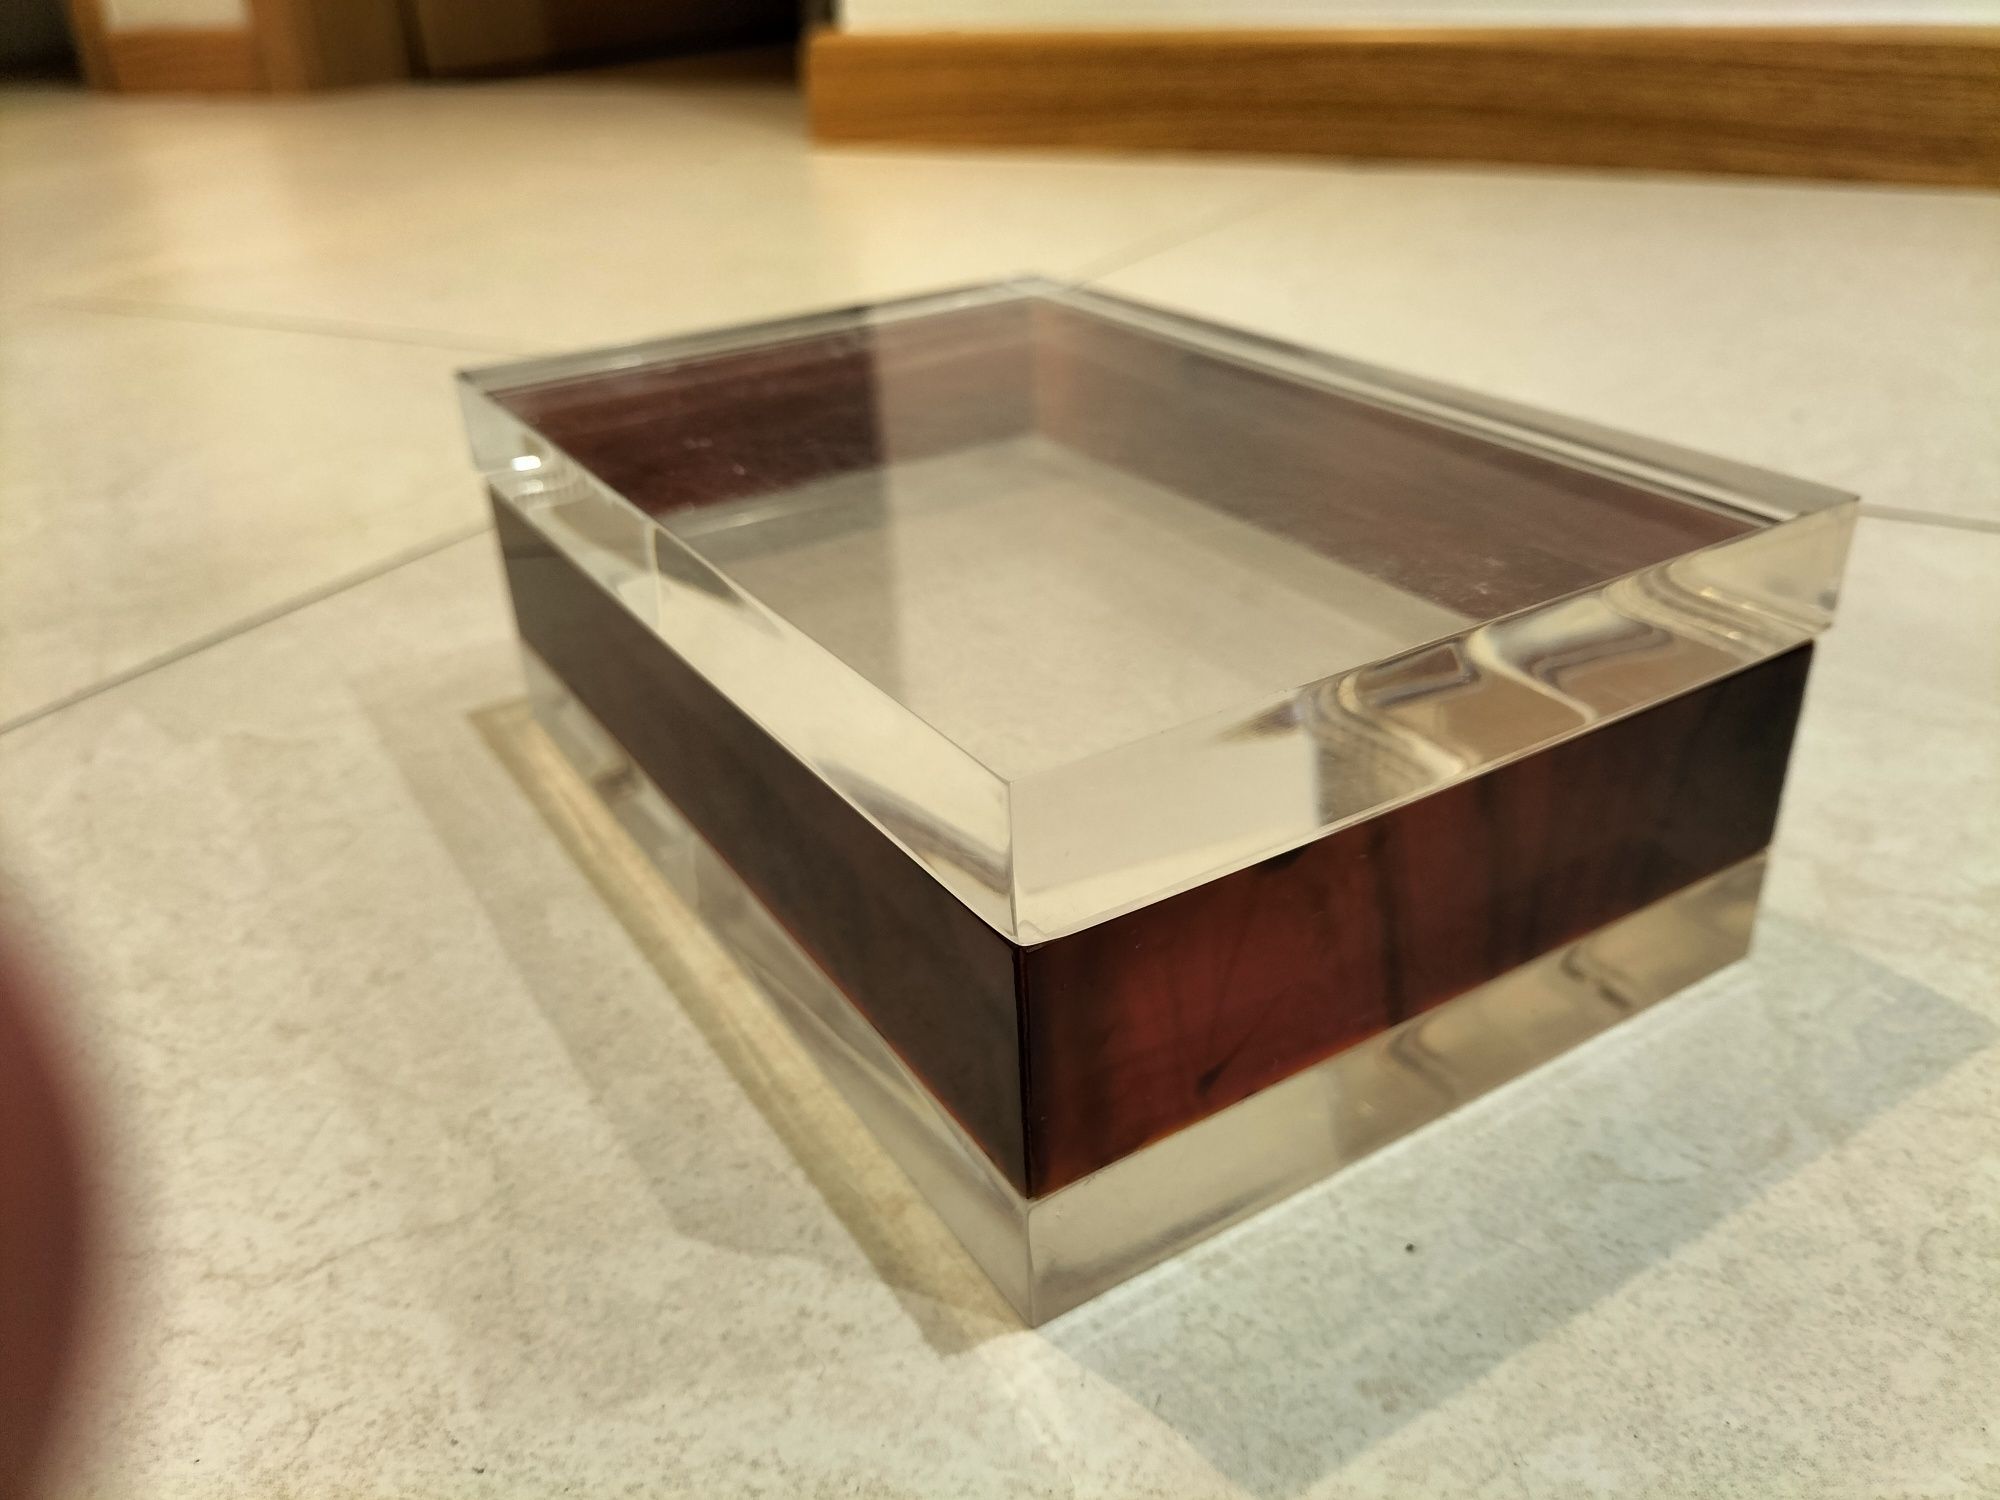 Caixa acrilico transparente comp: 17,5 cm X larg: 11 cm X alt: 6,5 cm